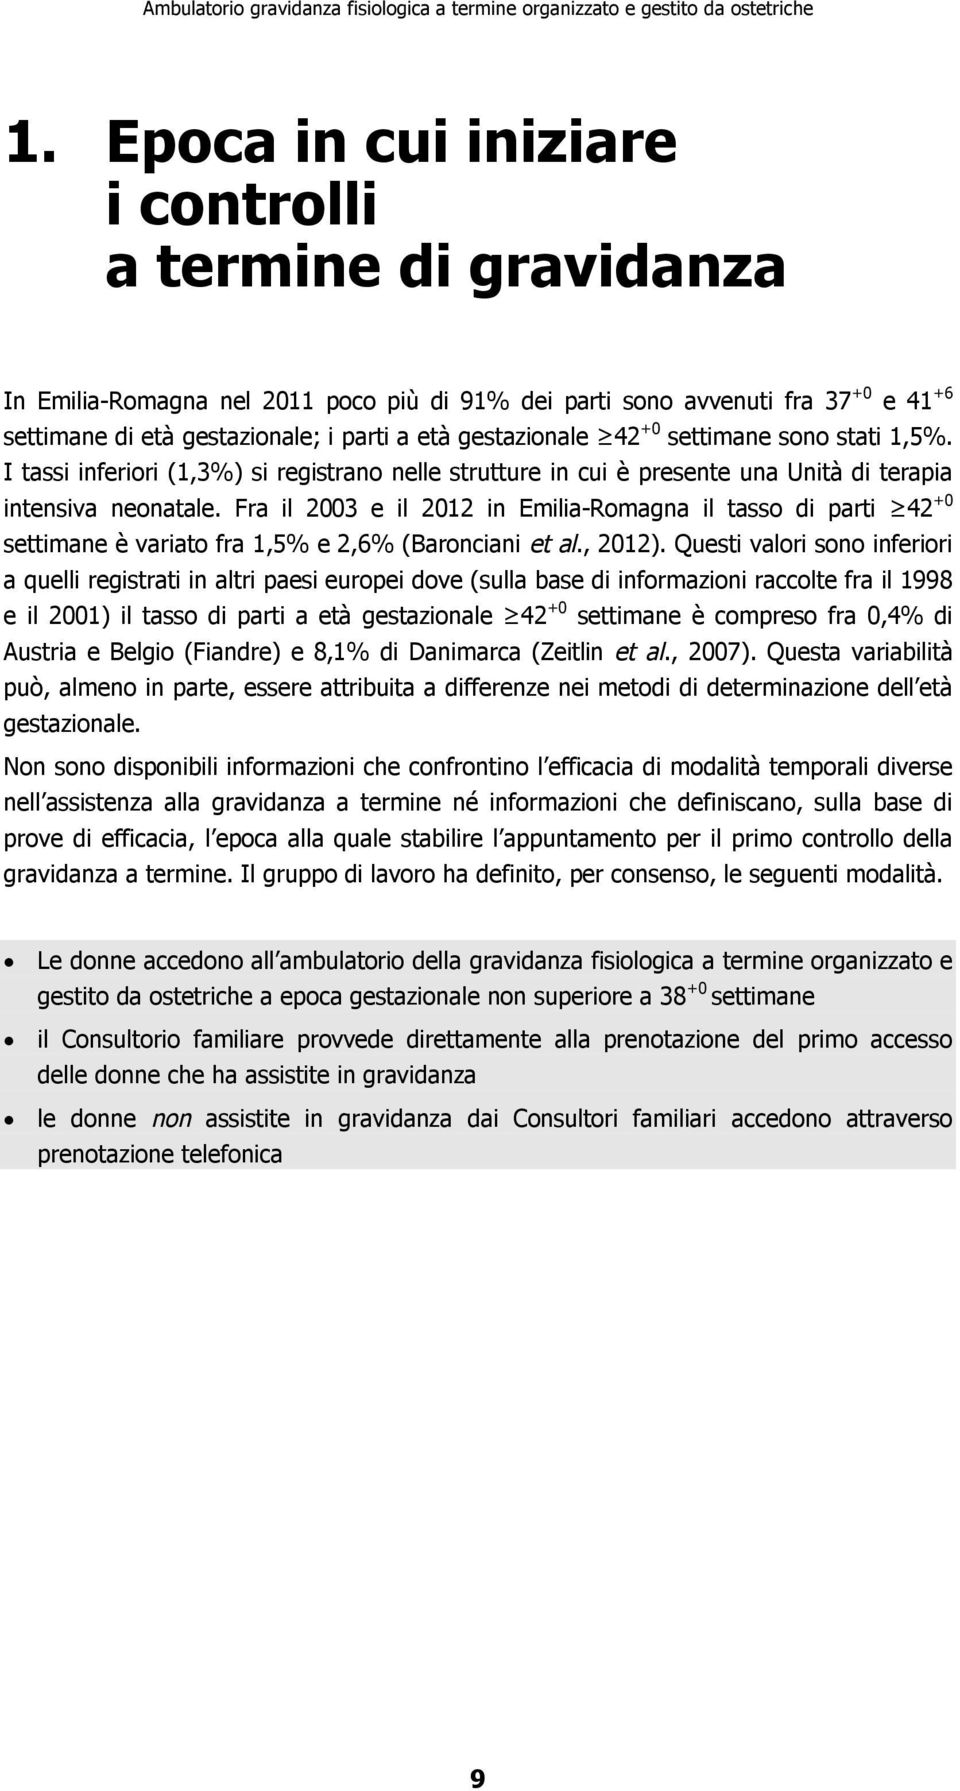 Fra il 2003 e il 2012 in Emilia-Romagna il tasso di parti 42 +0 settimane è variato fra 1,5% e 2,6% (Baronciani et al., 2012).